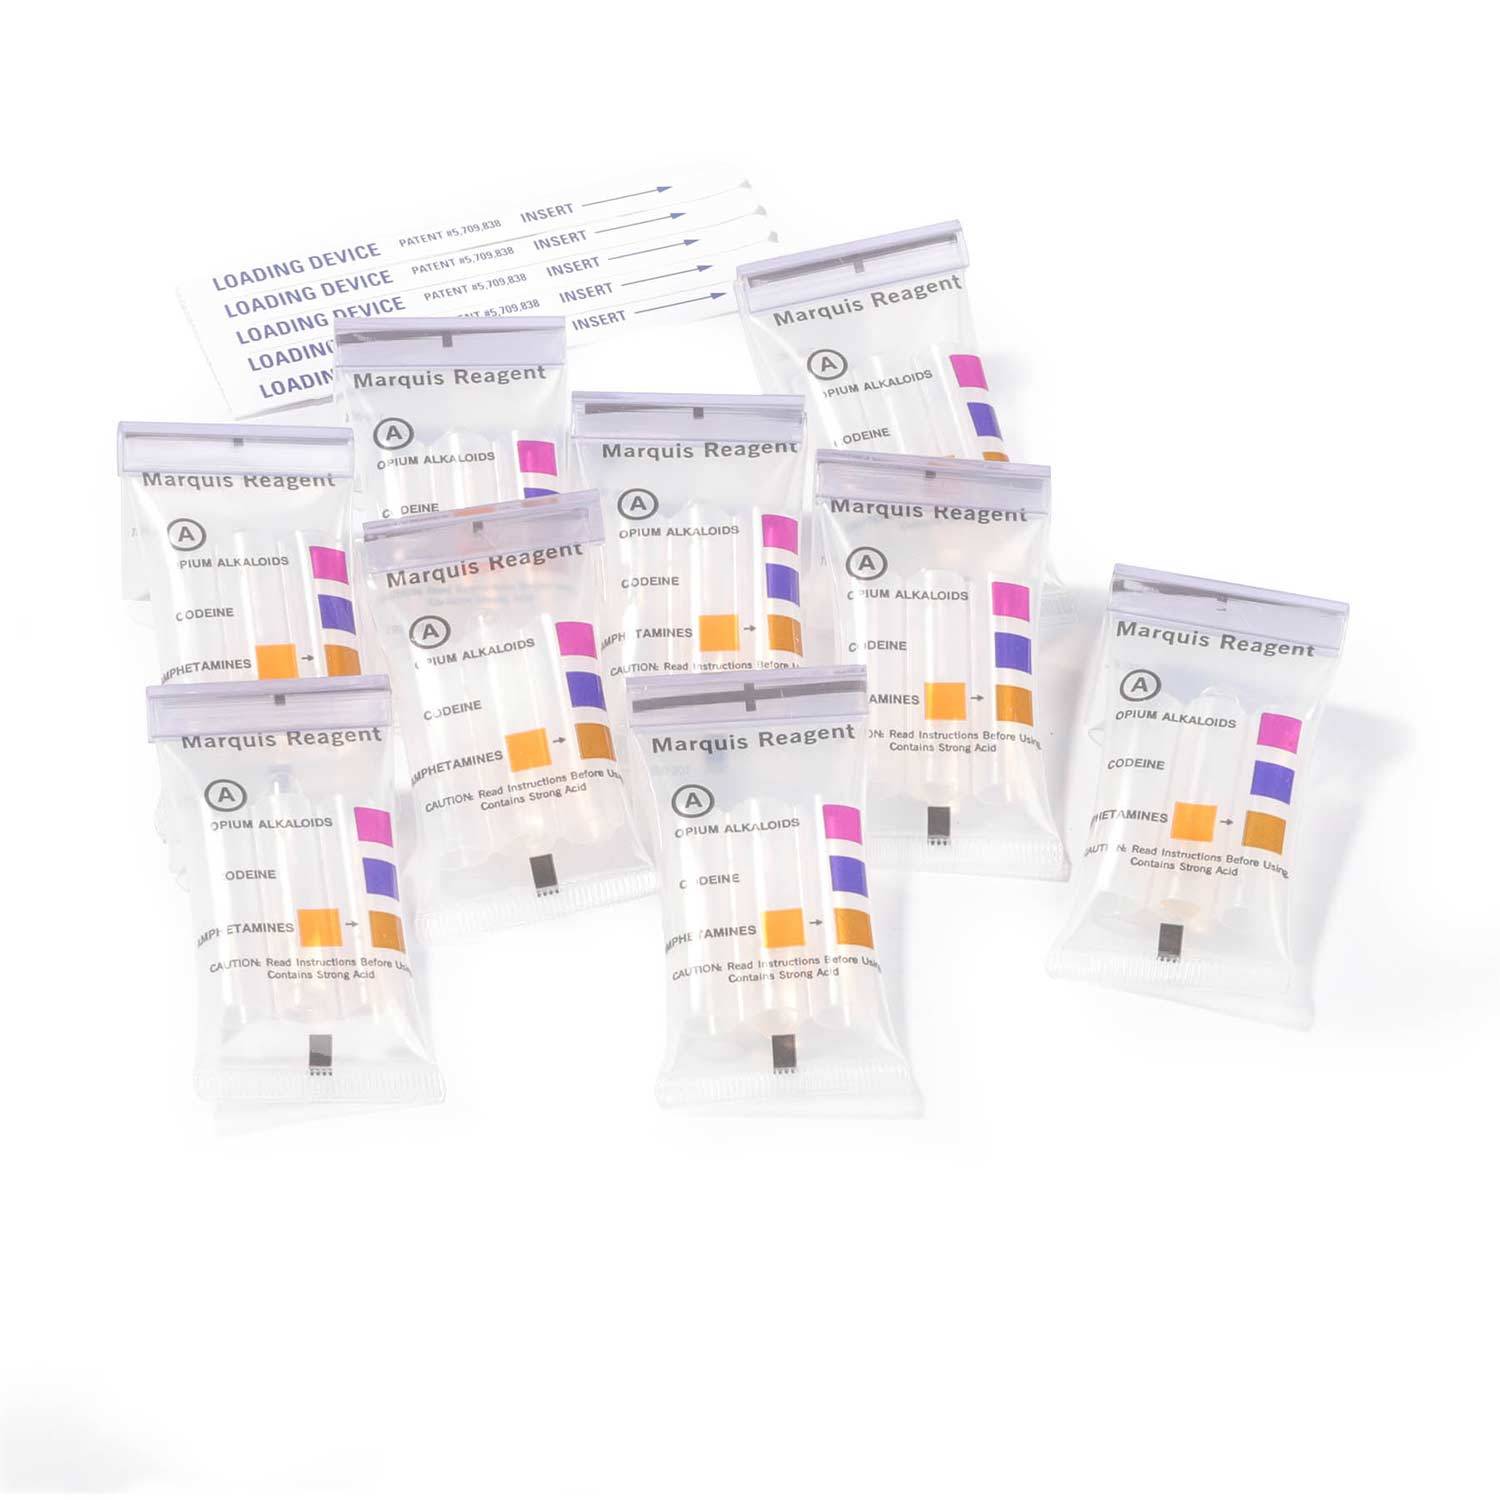 NIK Opium Alkaloids Drug Test Refill Pack